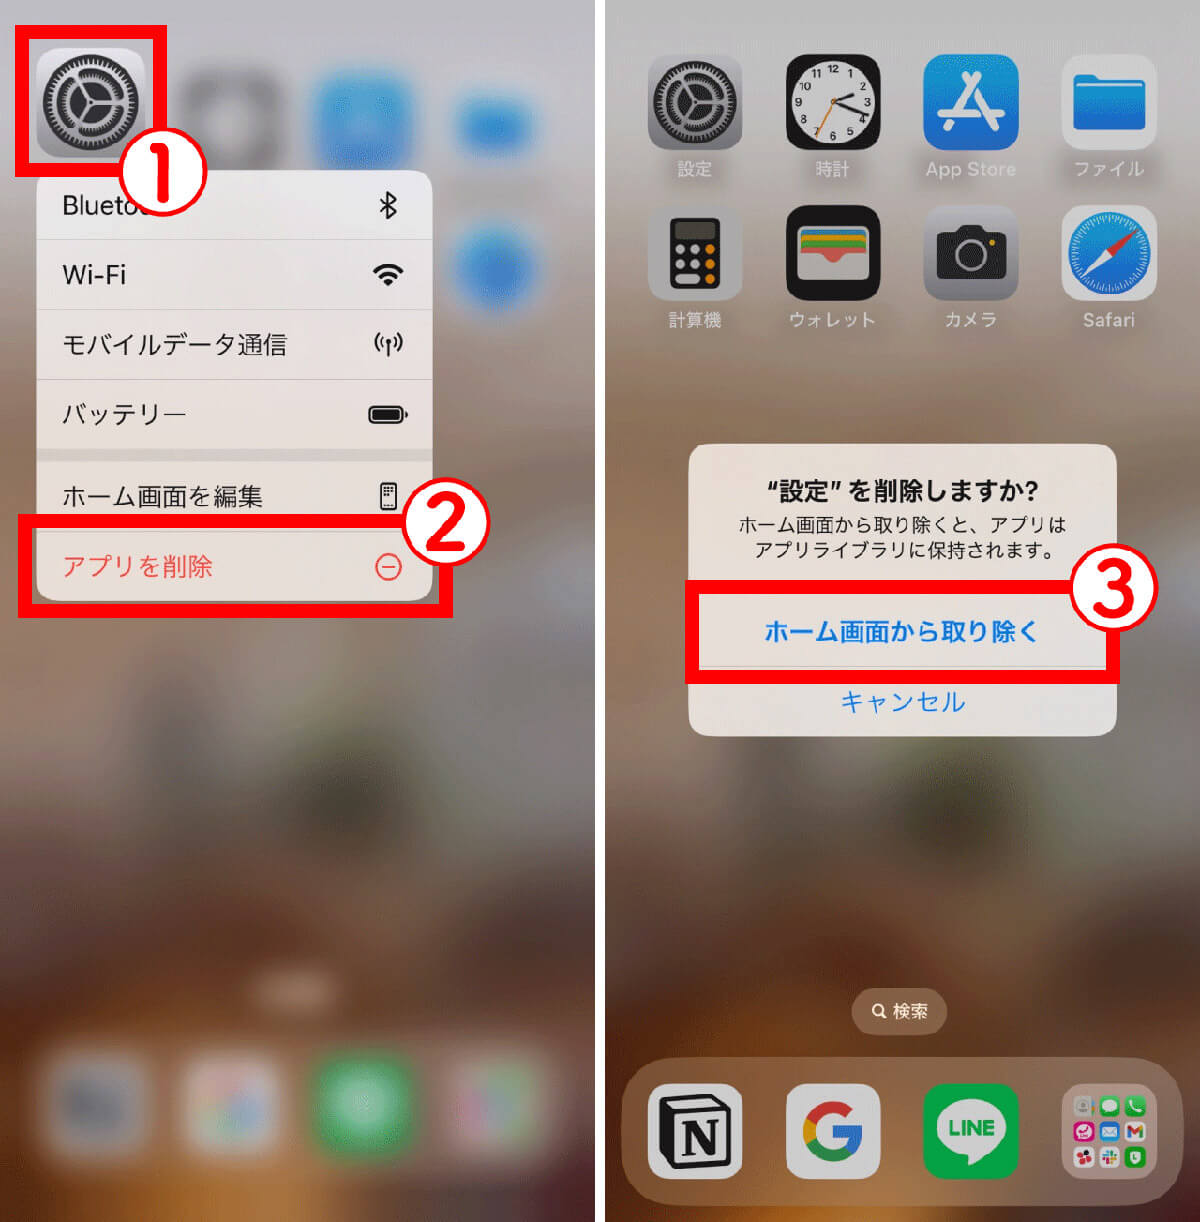 【参考】iPhoneの「設定」アプリを削除する方法1